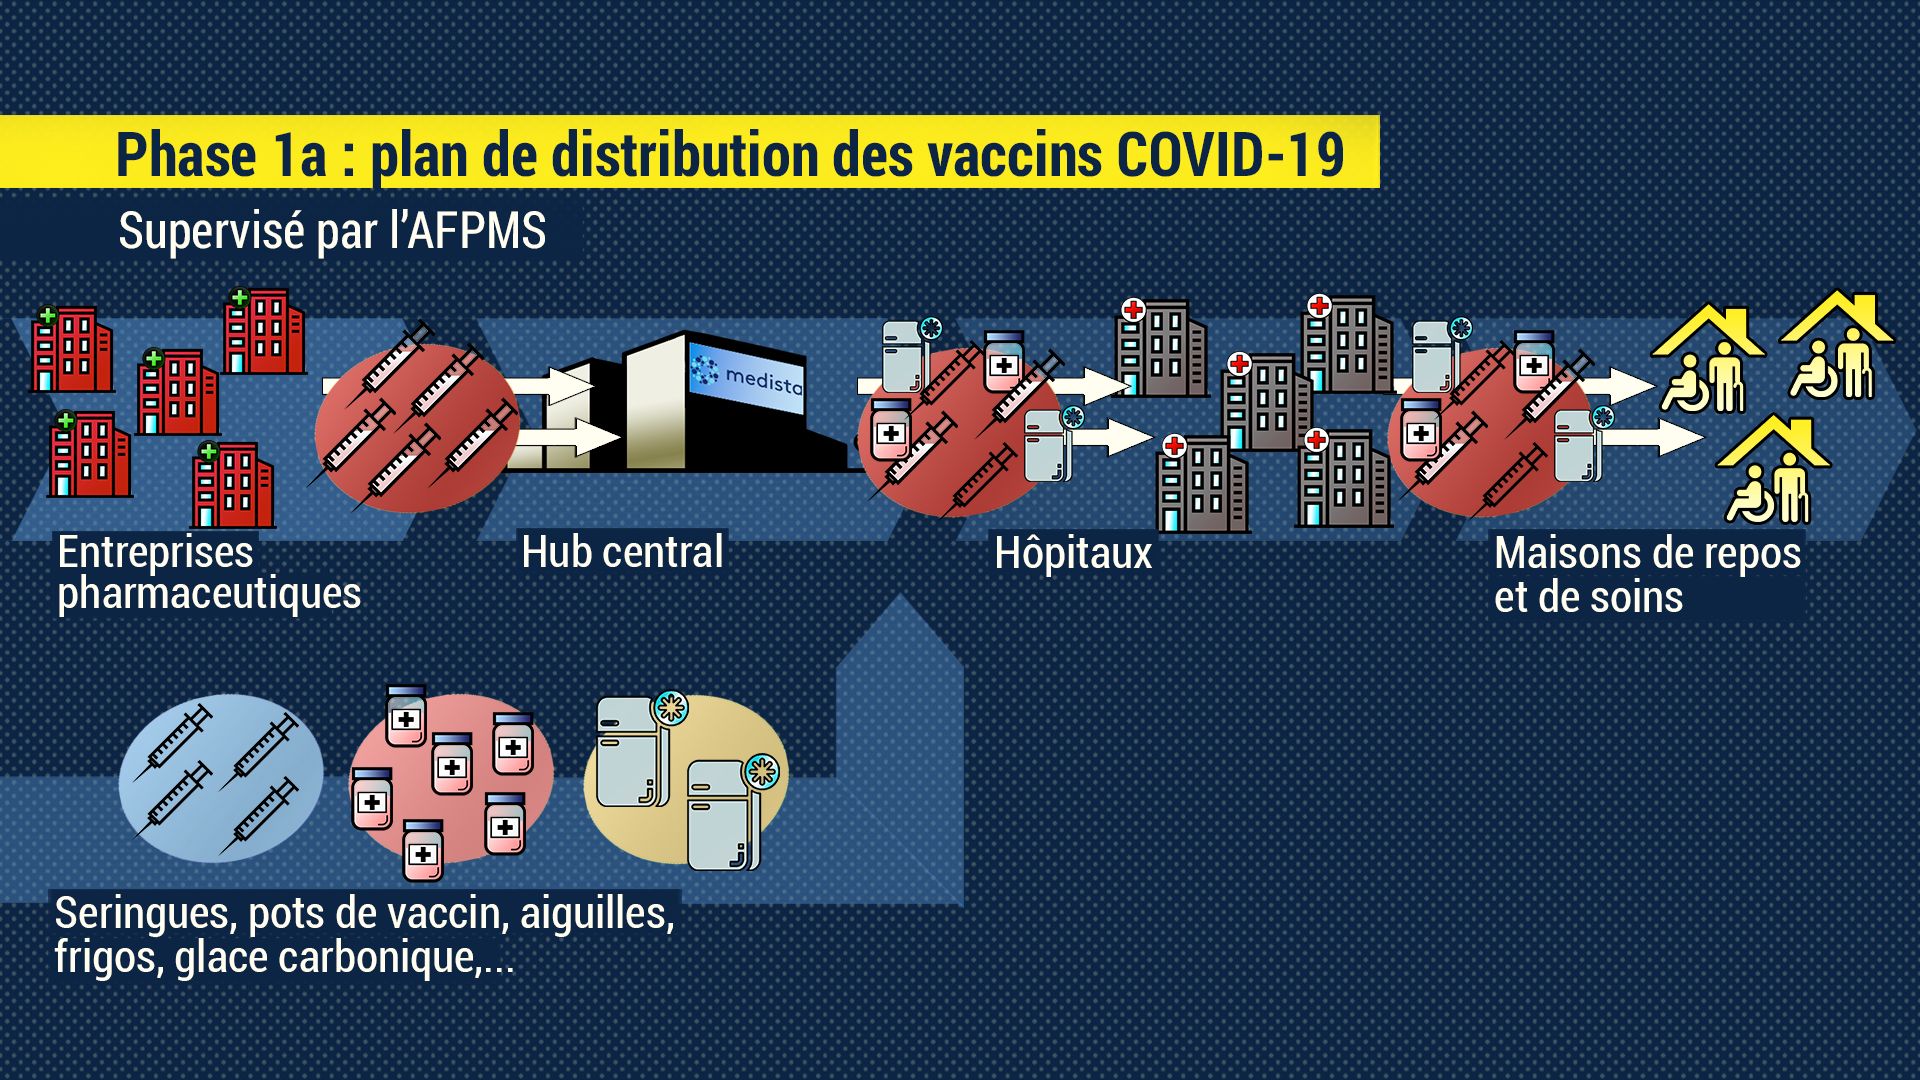 Comment va se passer concrètement la distribution des vaccins Covid-19 en Belgique?